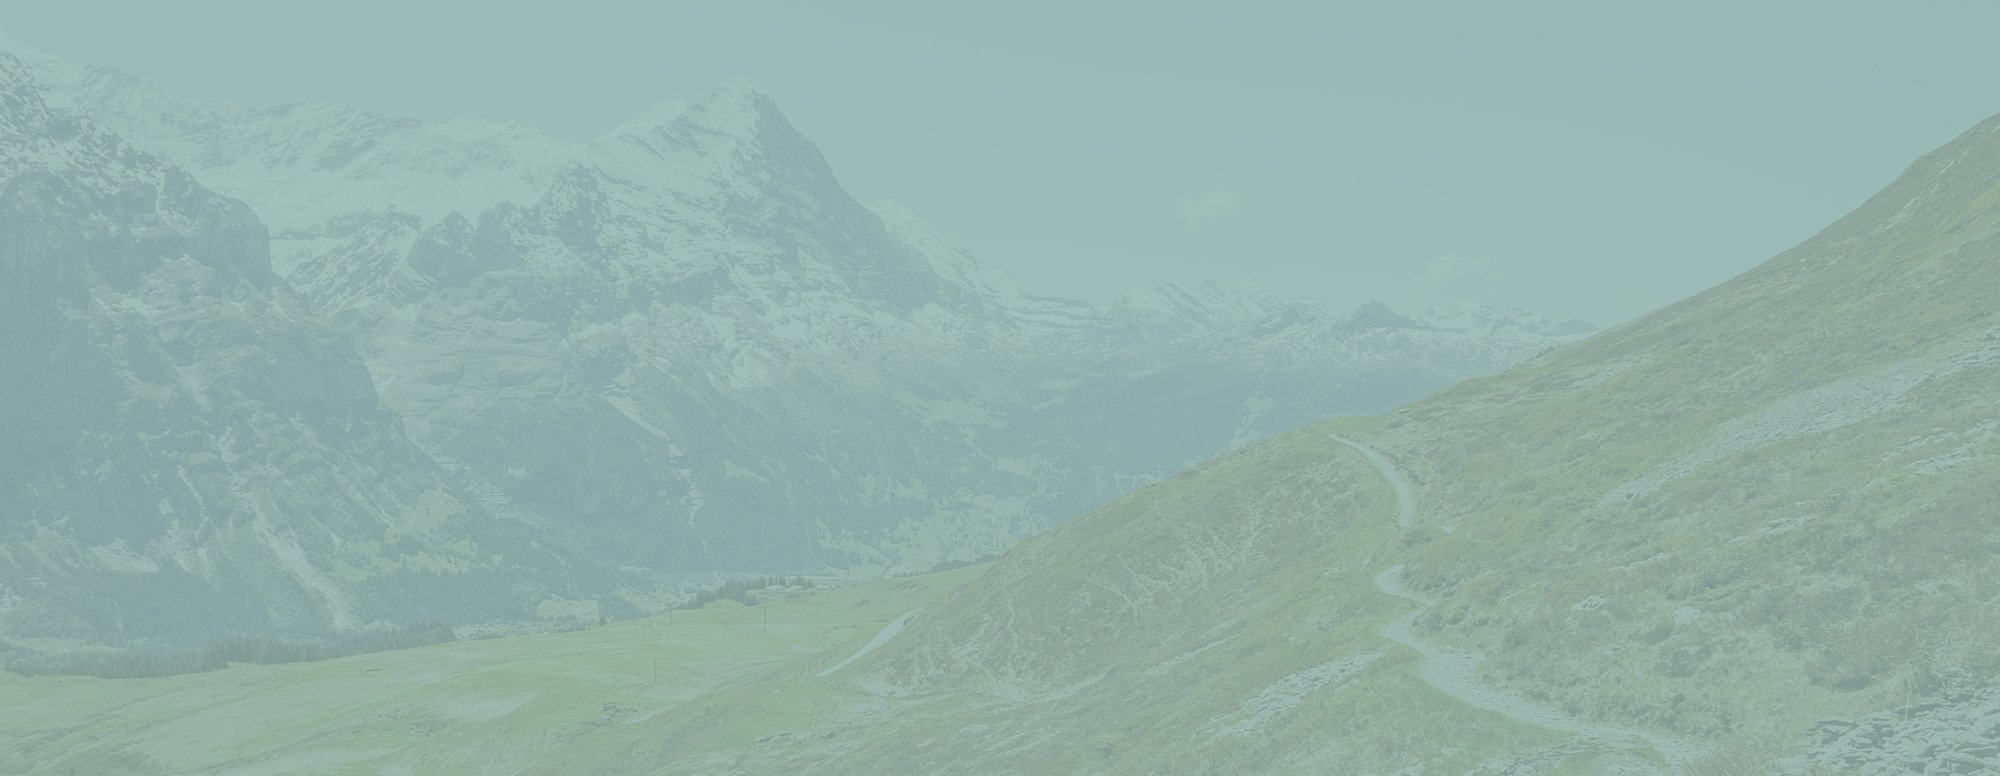 Für die Seite zum Thema HubSpot ein Hintergrundbild mit einer Berglandschaft